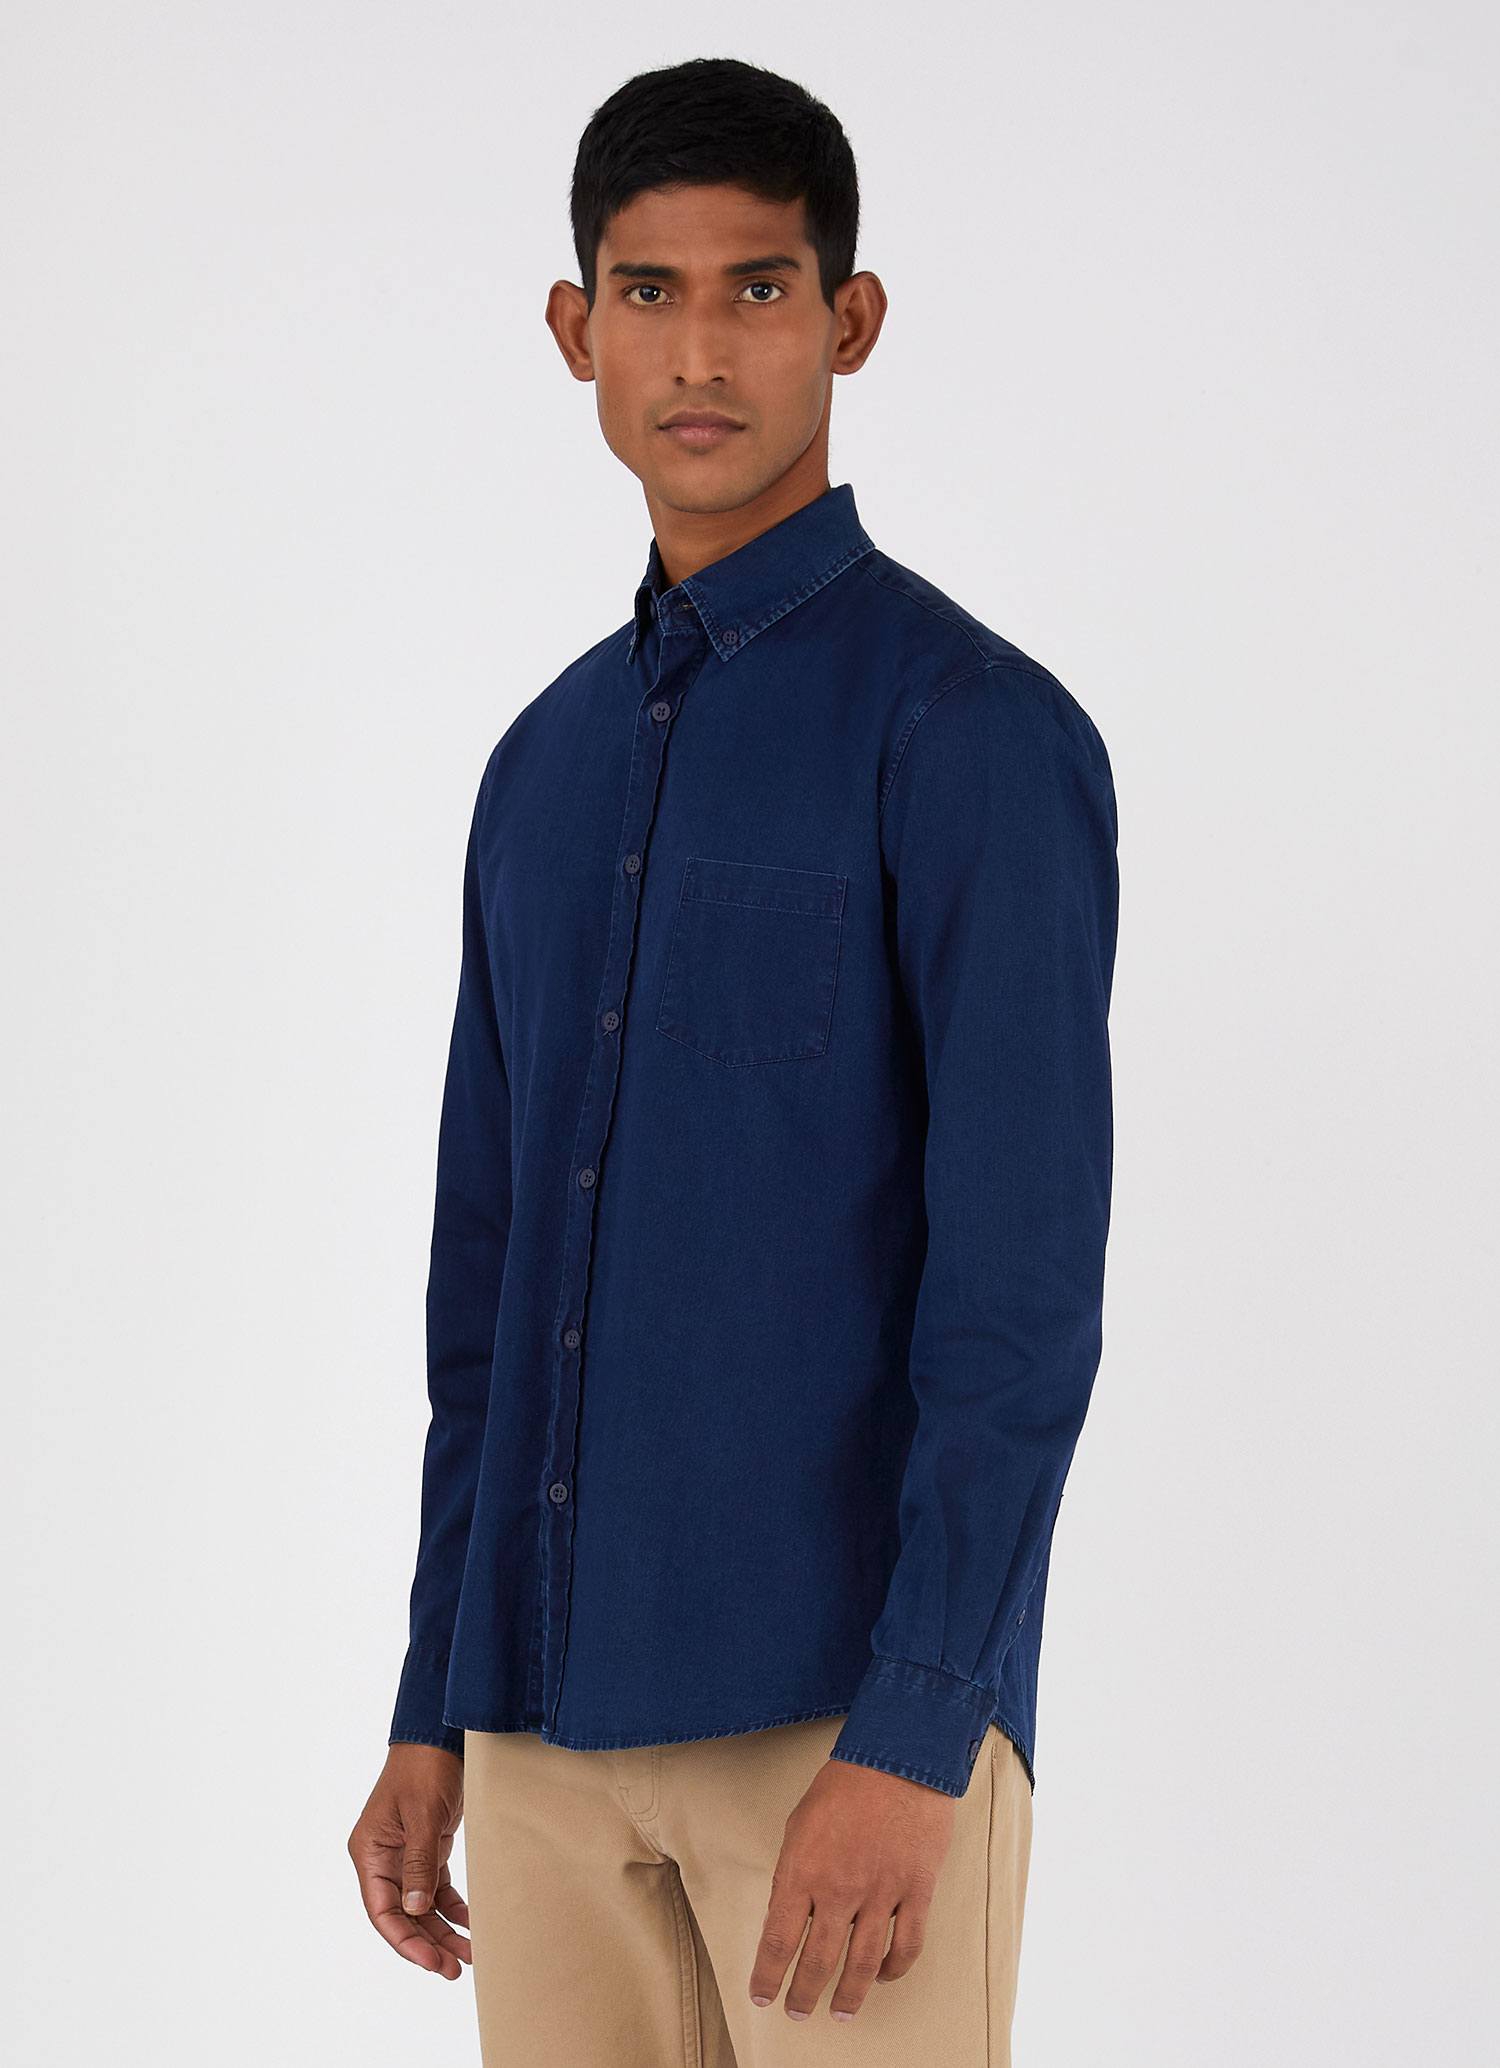 Buy 18+ Men Dark Blue Denim Casual Shirts (XXL) Online at Best Prices in  India - JioMart.